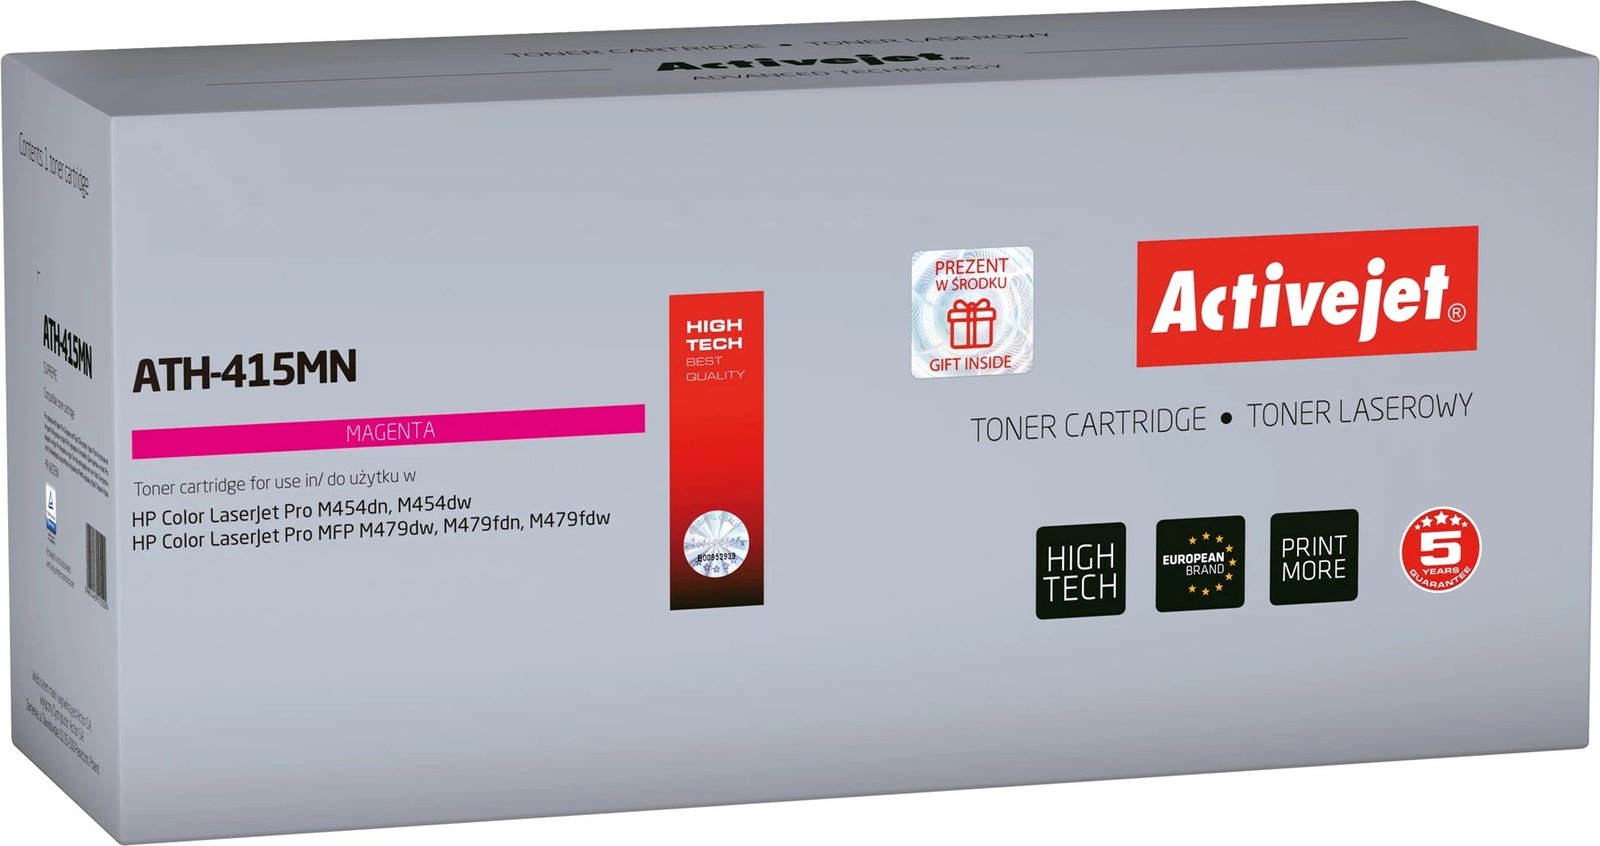 Toner zëvendësues Activejet ATH-415MN  për printer HP 415A W2033A, supreme (me chip), vjollcë